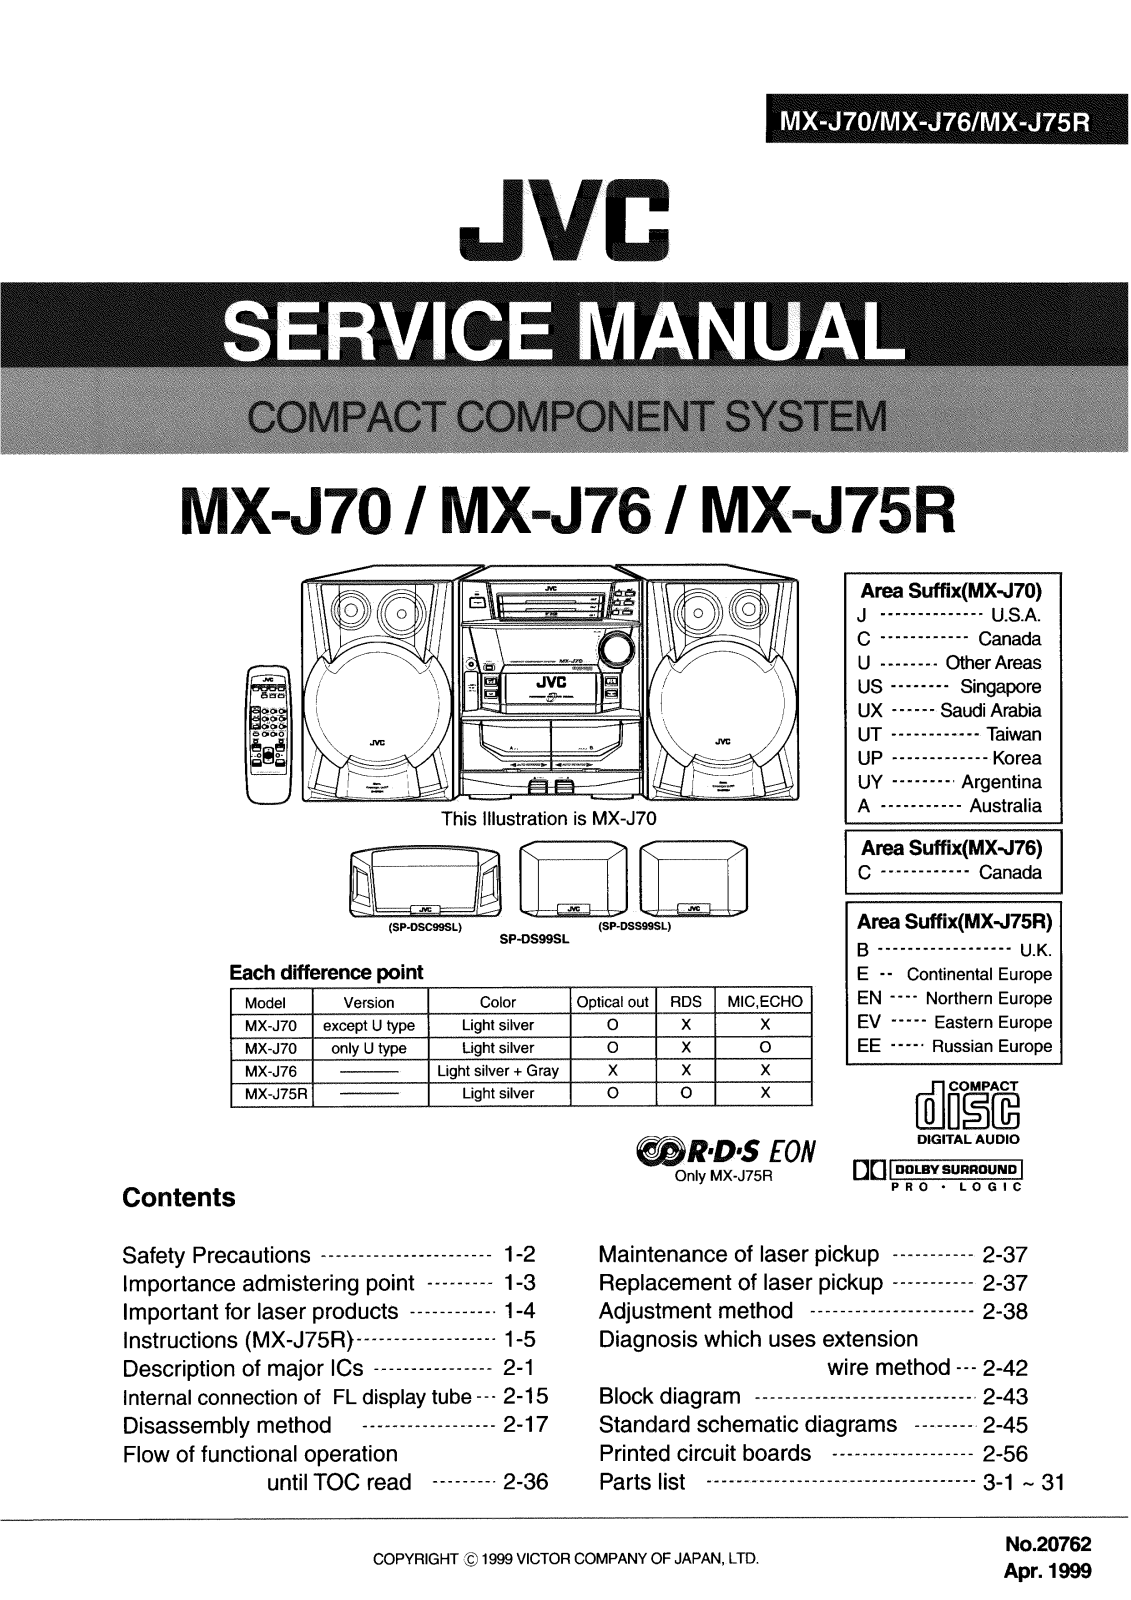 JVC MX J75R, MX J70R, MX J76R Service Manual